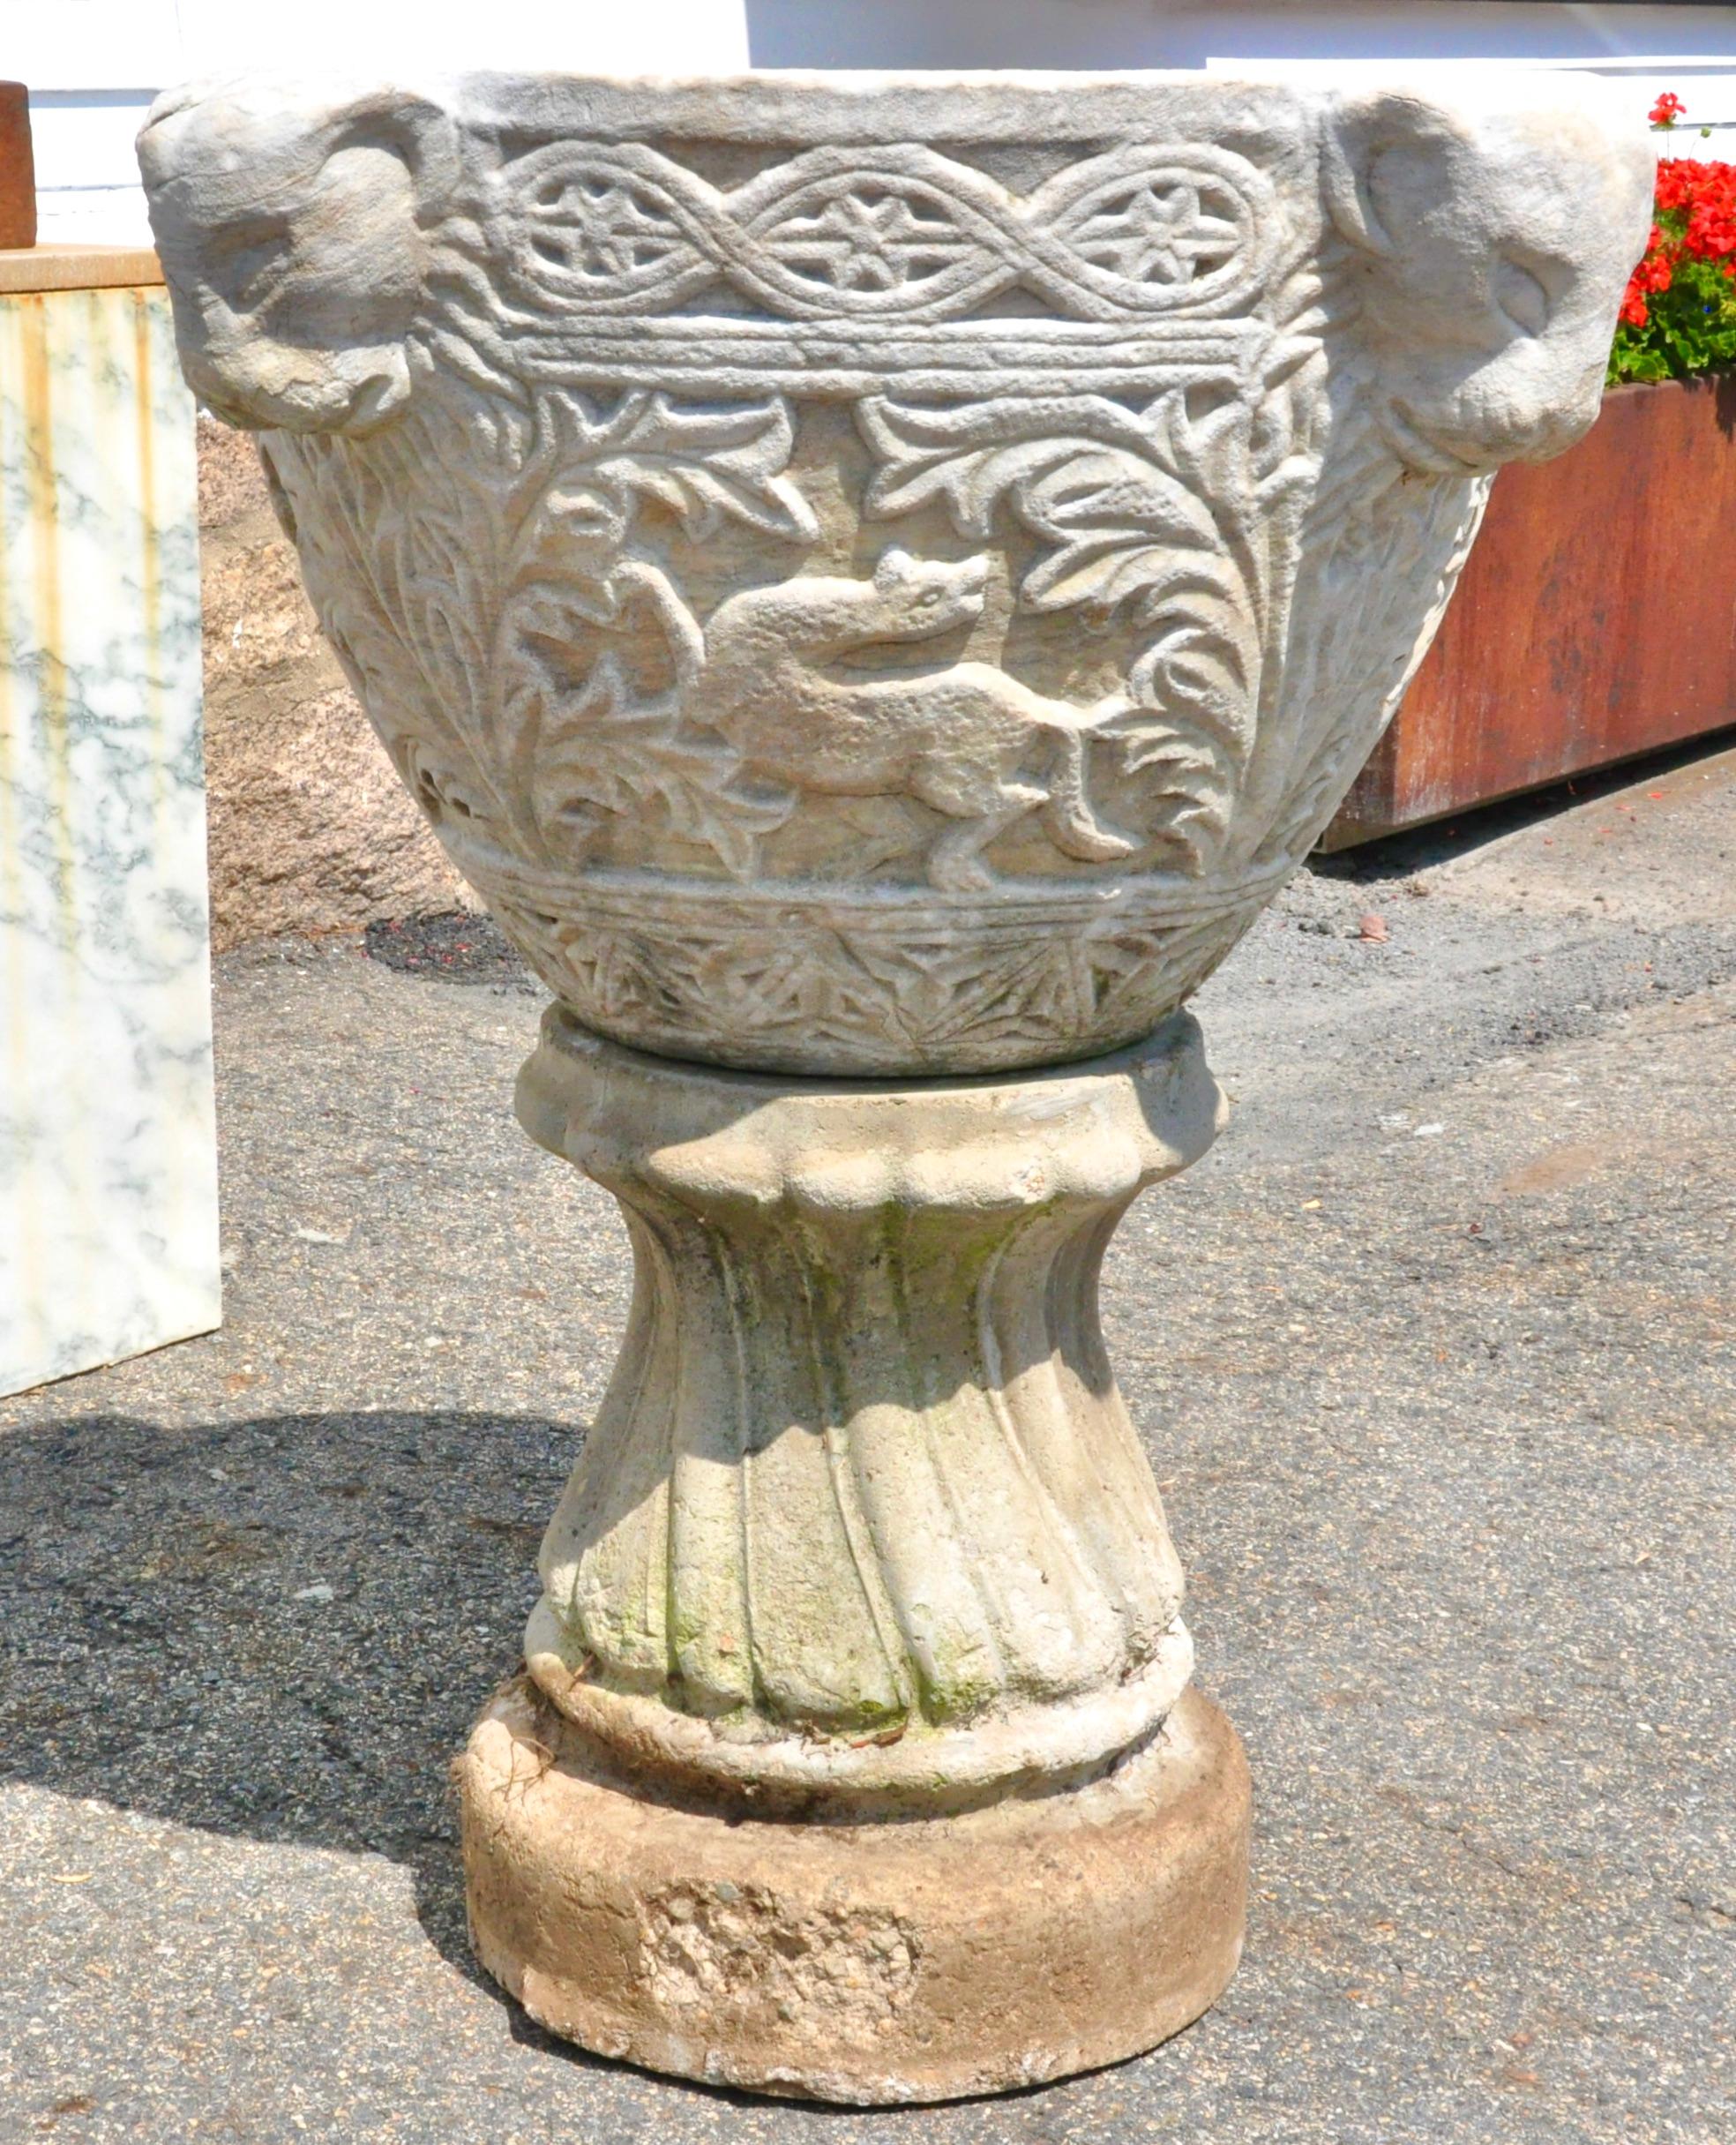 Fonts baptismaux en marbre sculpté de style byzantin sur un socle en pierre moulée. Les quatre lions font le tour des fonts baptismaux. Sculpture de feuillage et byzantine sur toute la surface. Chaque face est ornée d'un symbole zoomorphique